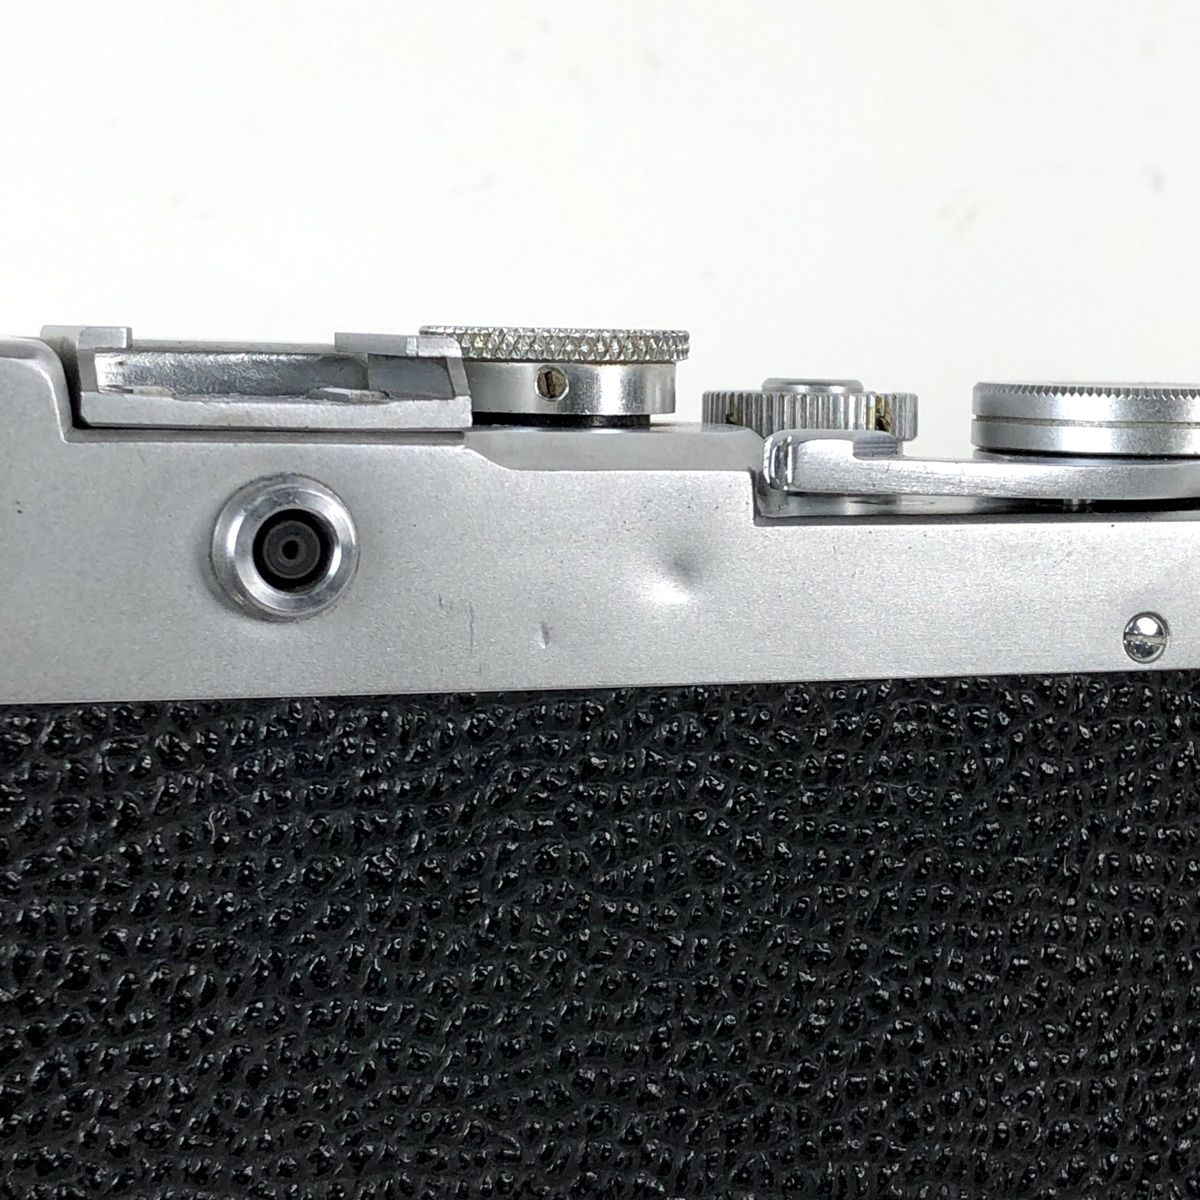 Leotax FV レオタックス レンジファインダーカメラ - カメラ